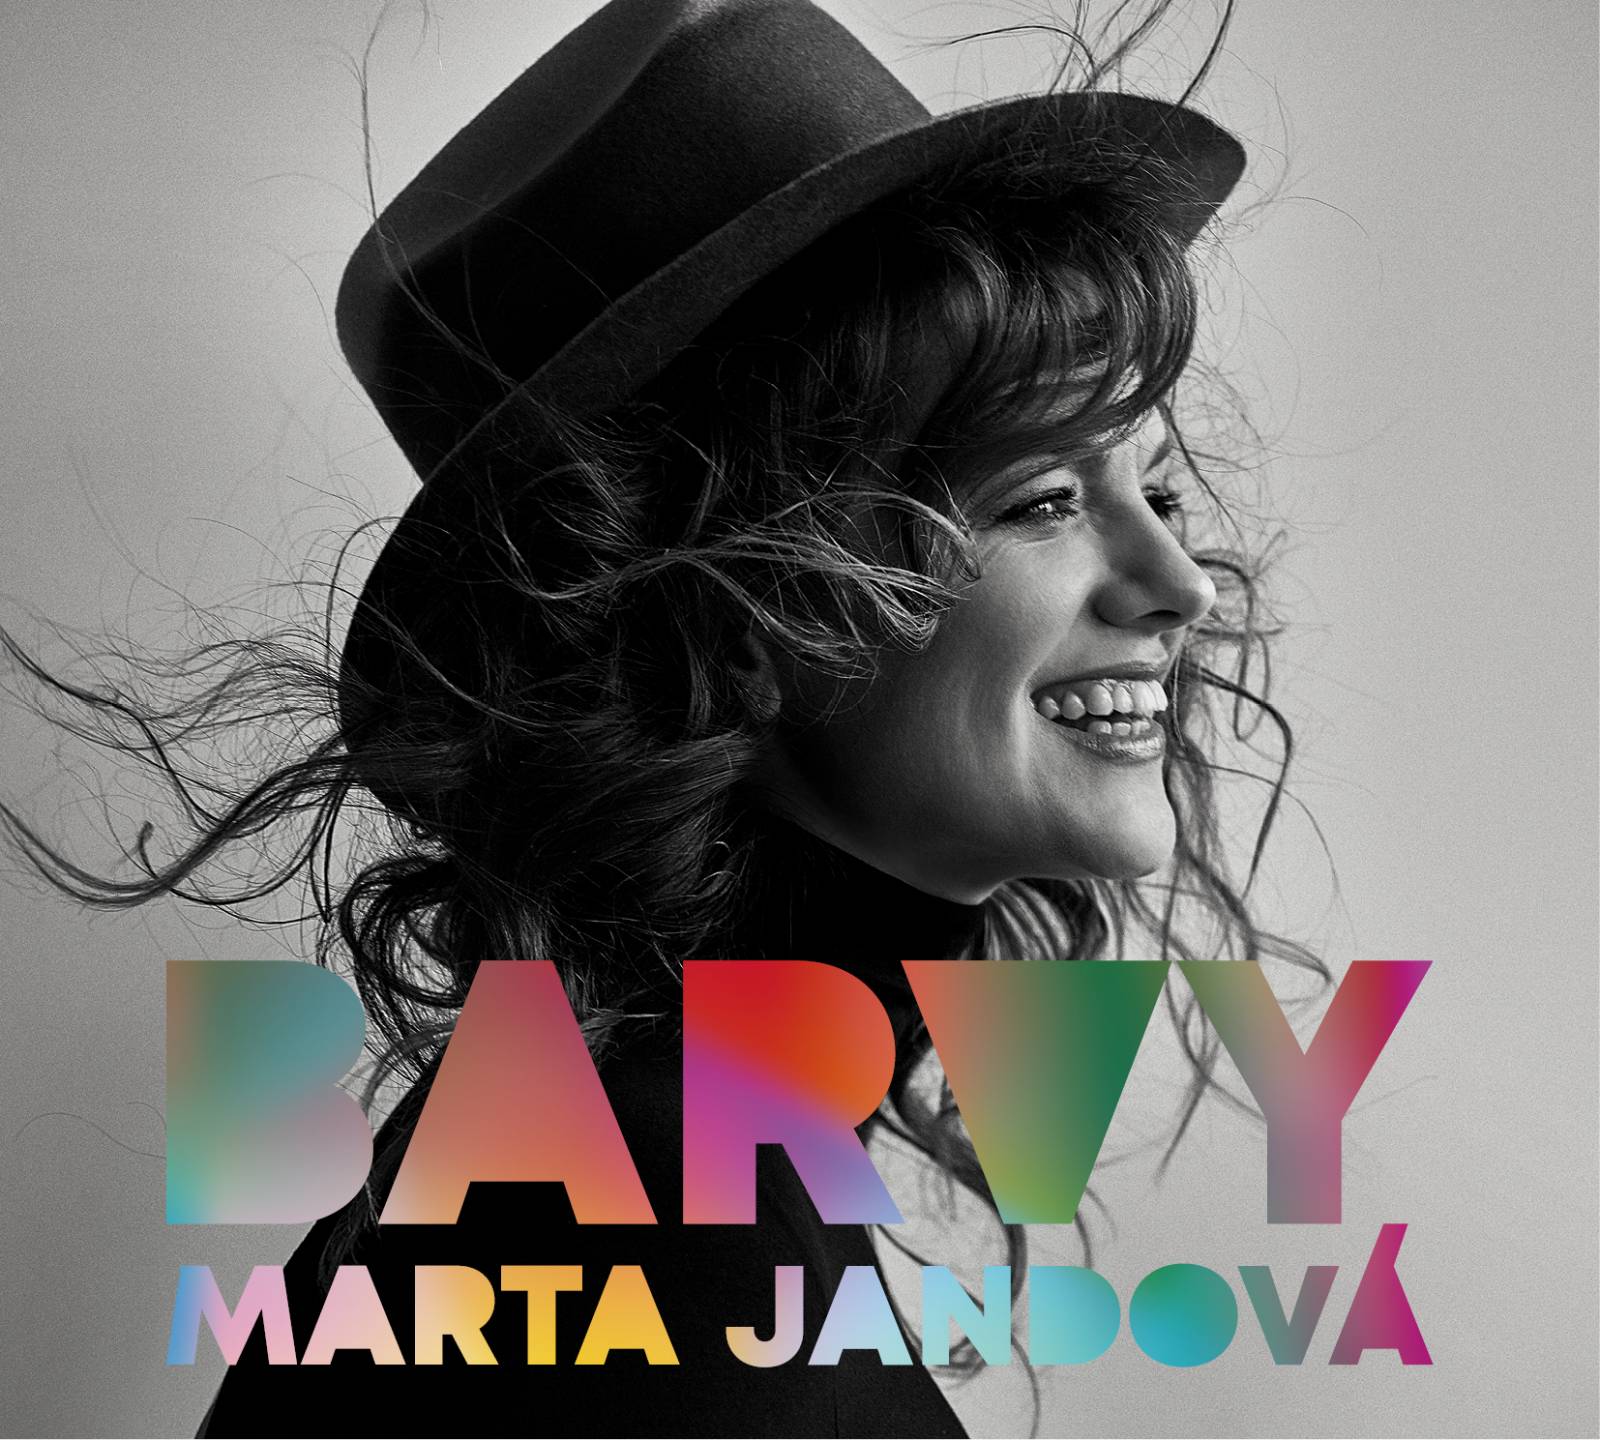 RECENZE: Marta Jandová si udělala radost sólovou deskou Barvy